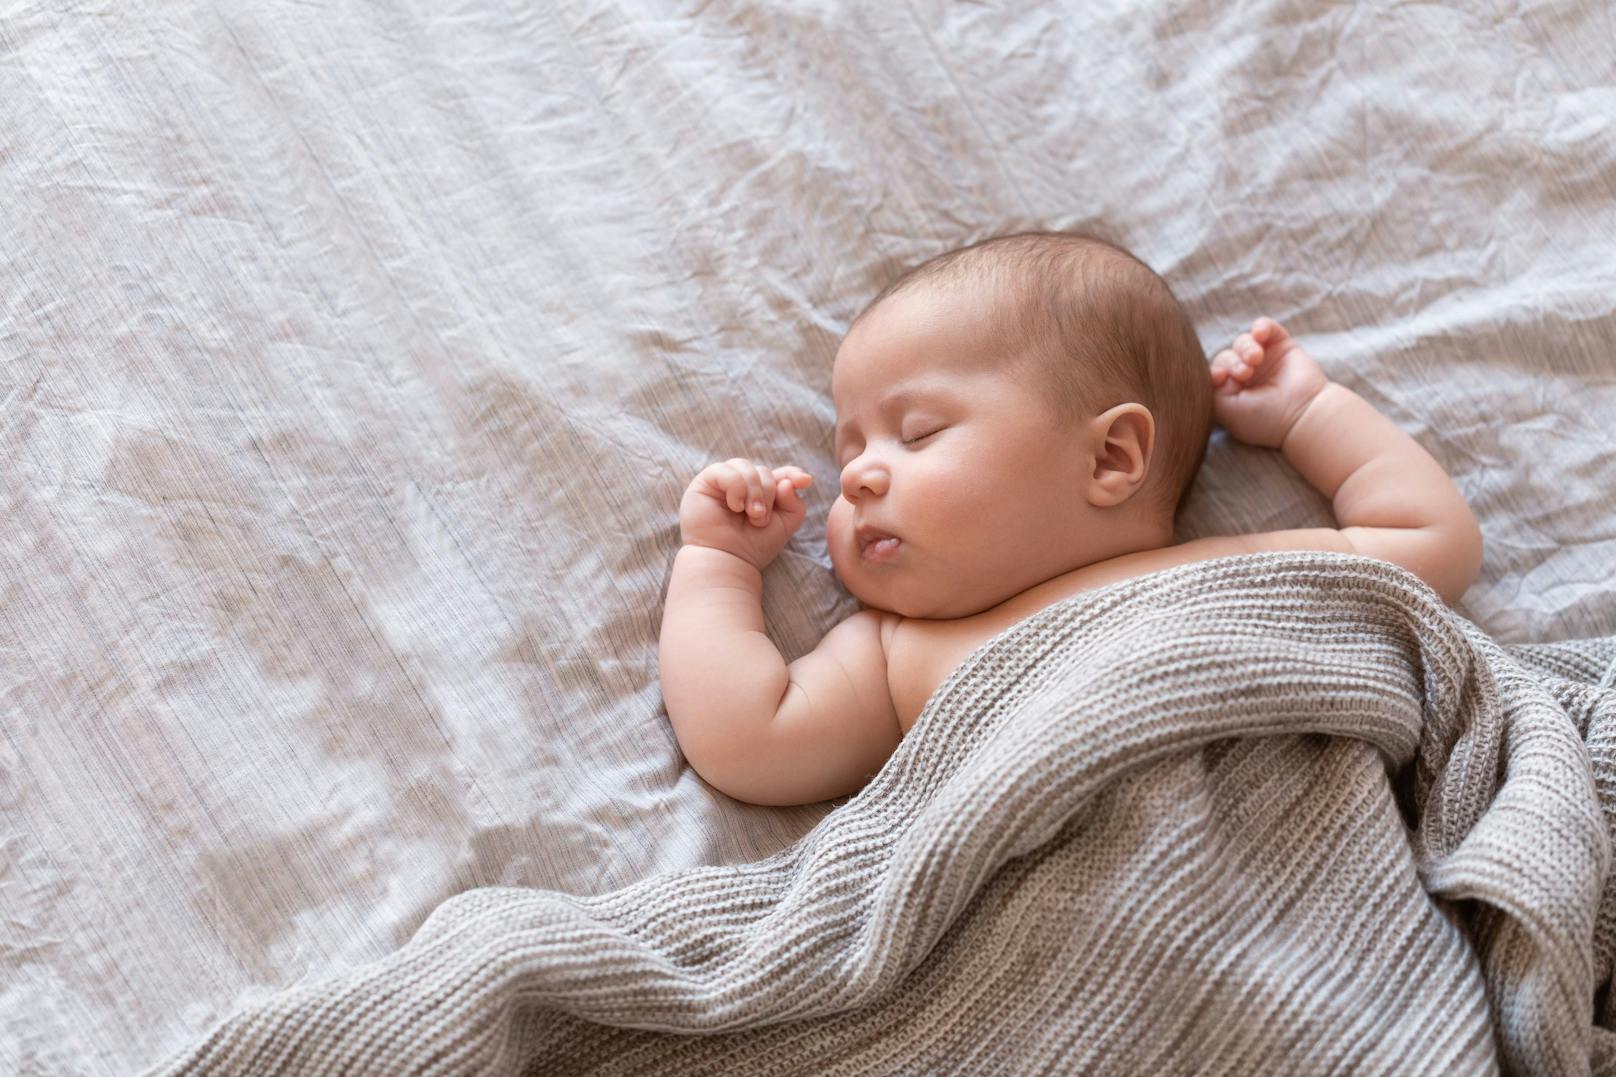 Die Säuglingssterberate betrug im vergangenen Jahr 2,3 Promille.